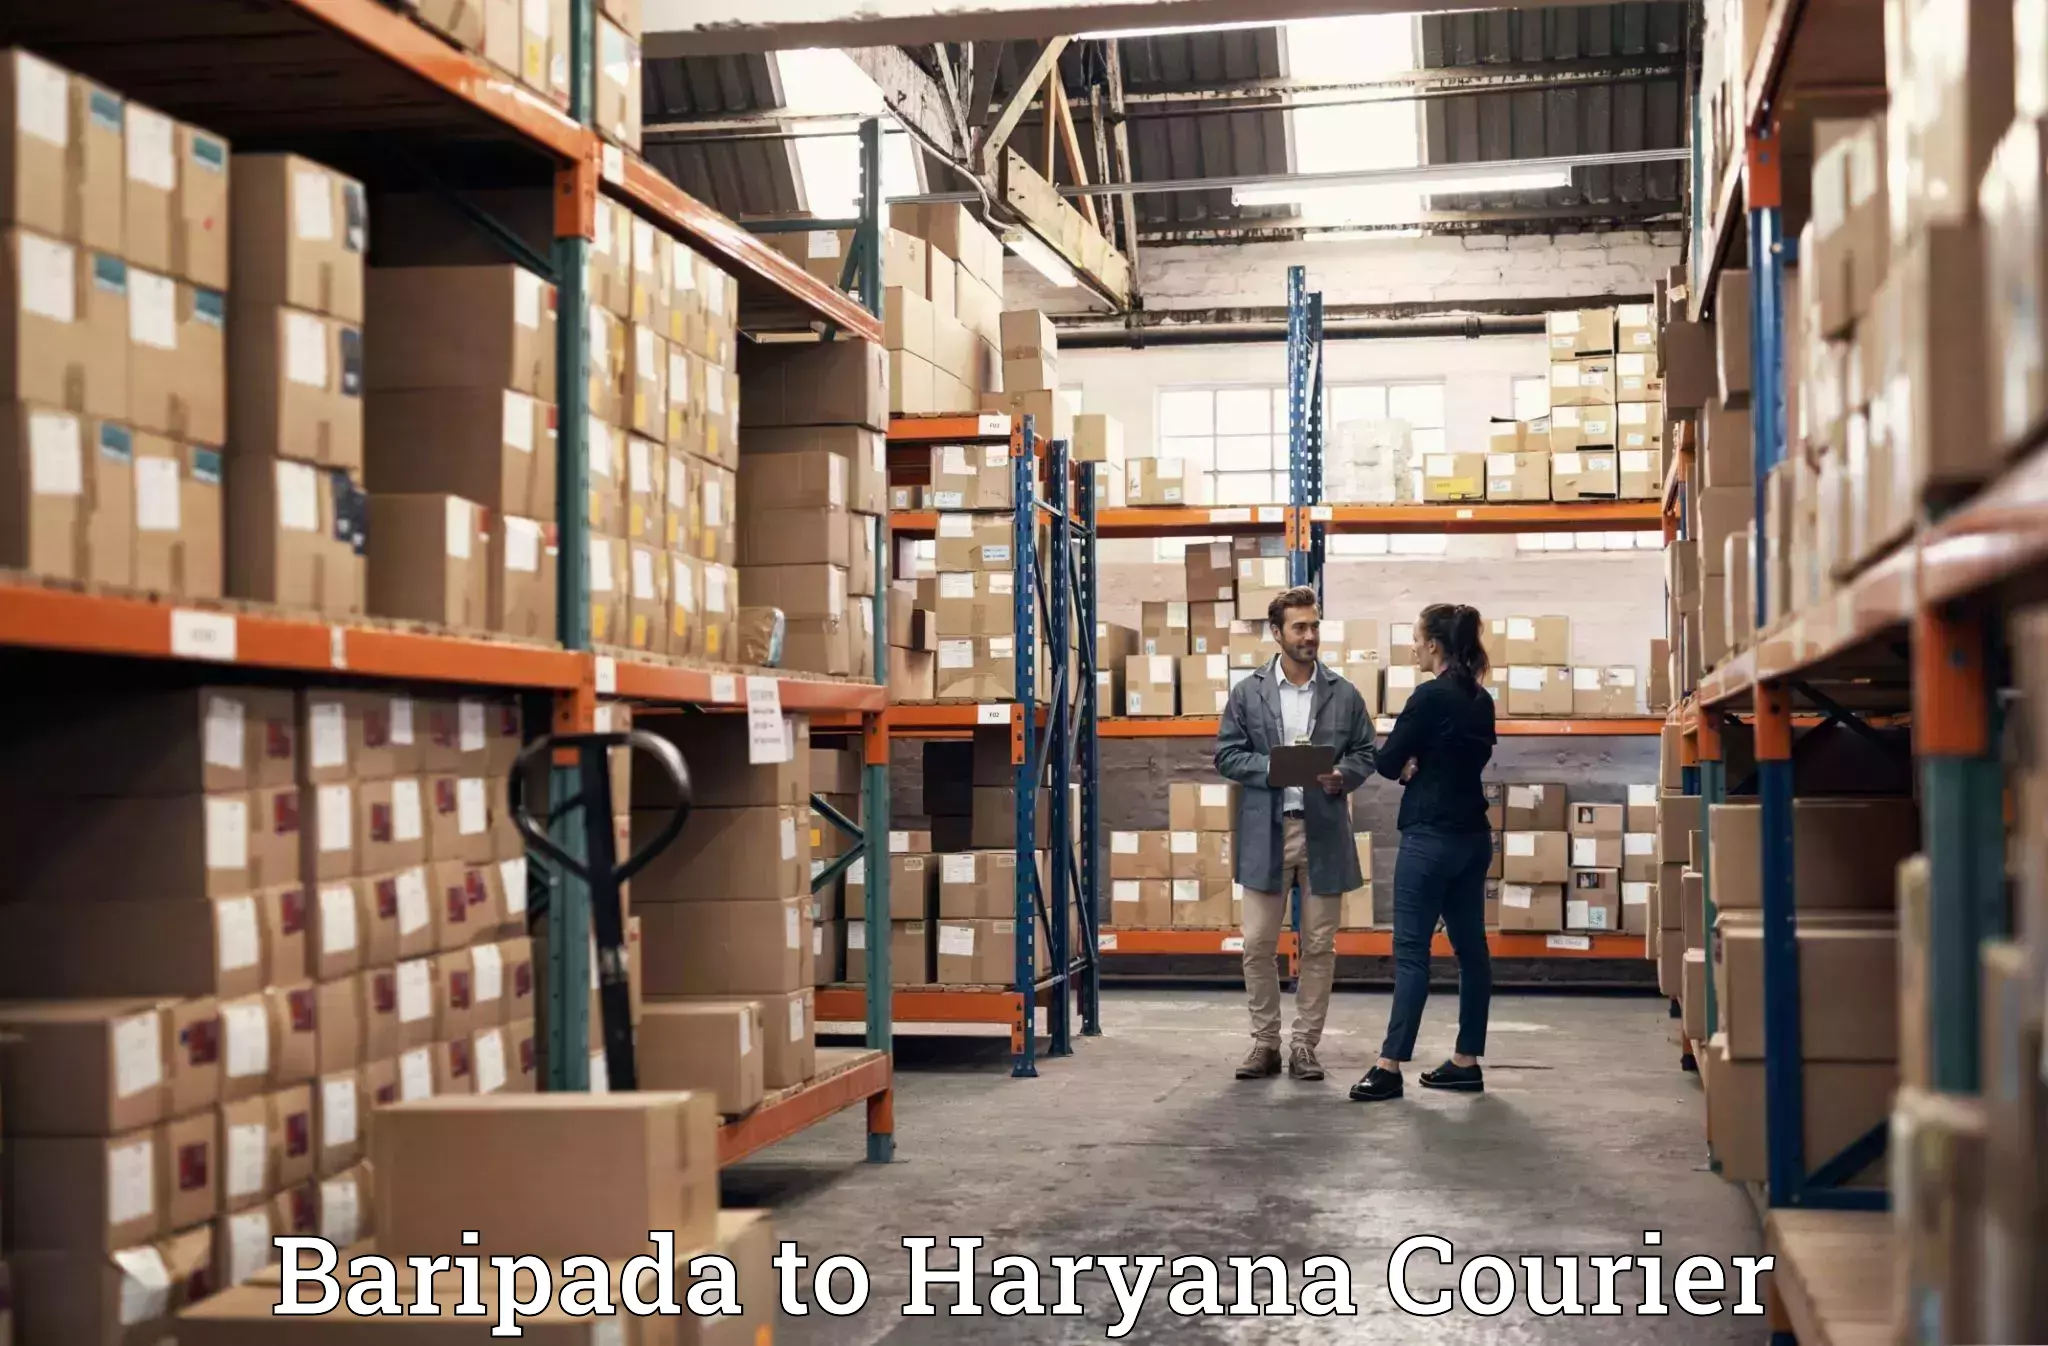 Specialized moving company Baripada to Gurgaon